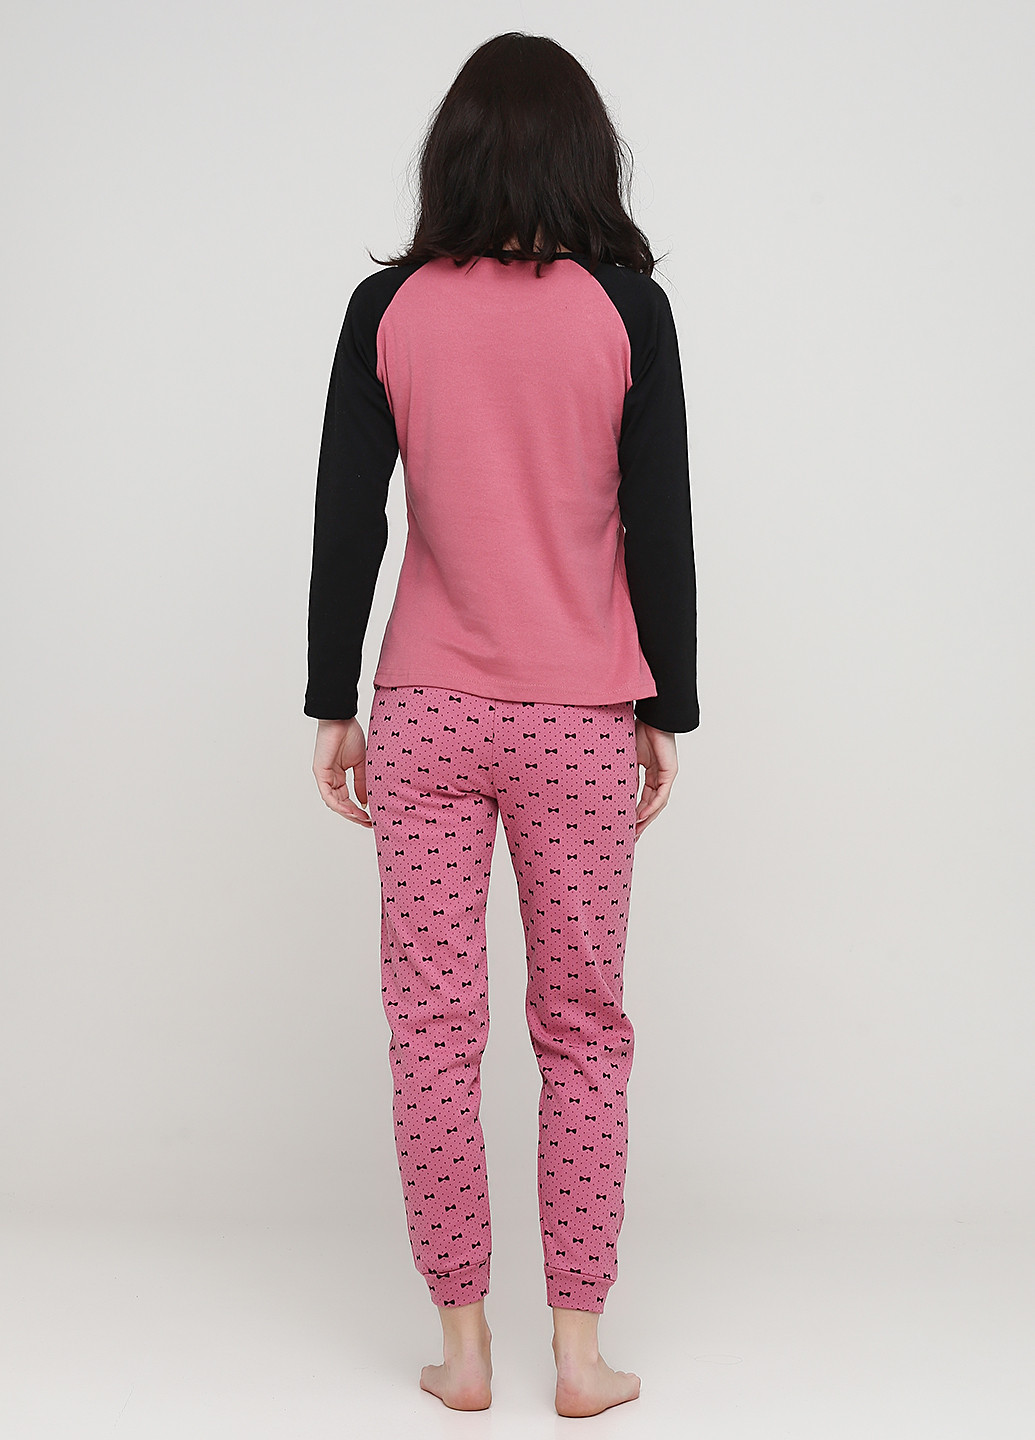 Розово-коричневая всесезон пижама (лонгслив, брюки) лонгслив + брюки Fawn